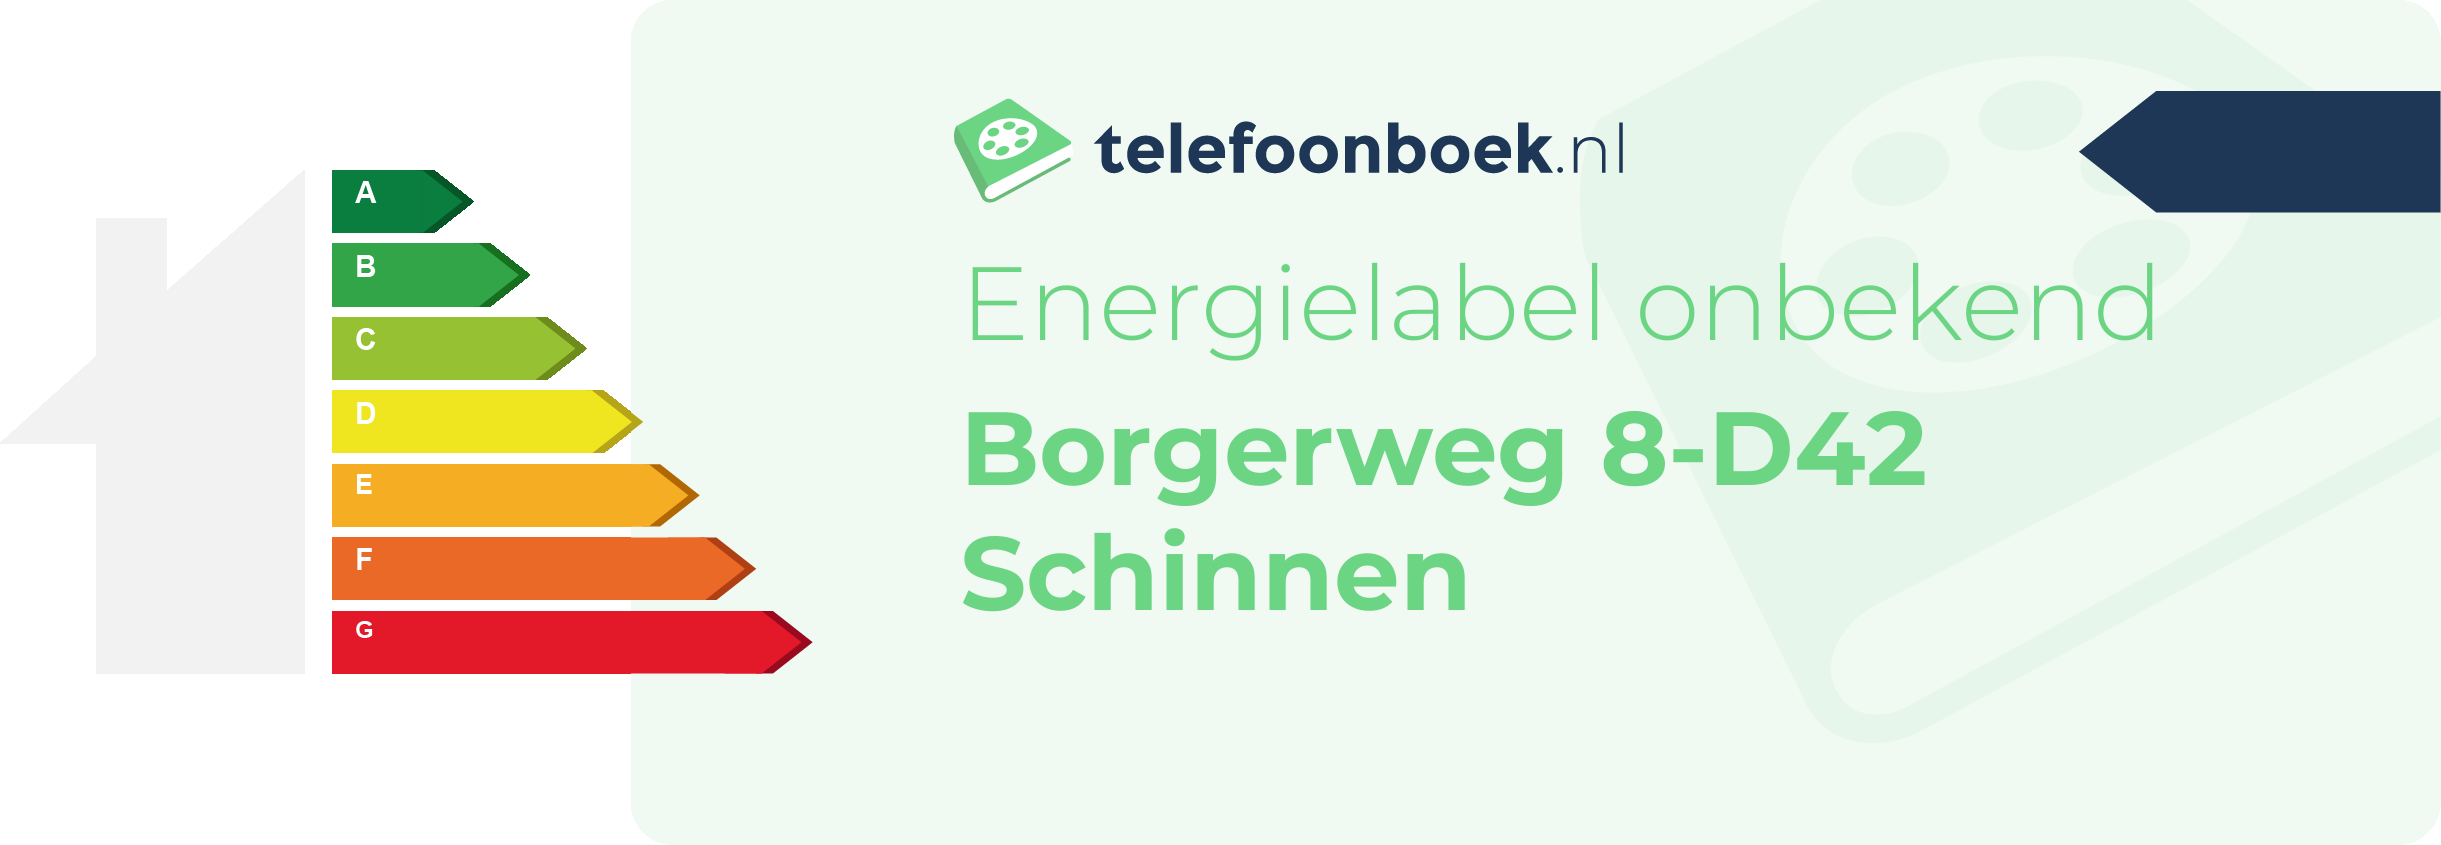 Energielabel Borgerweg 8-D42 Schinnen